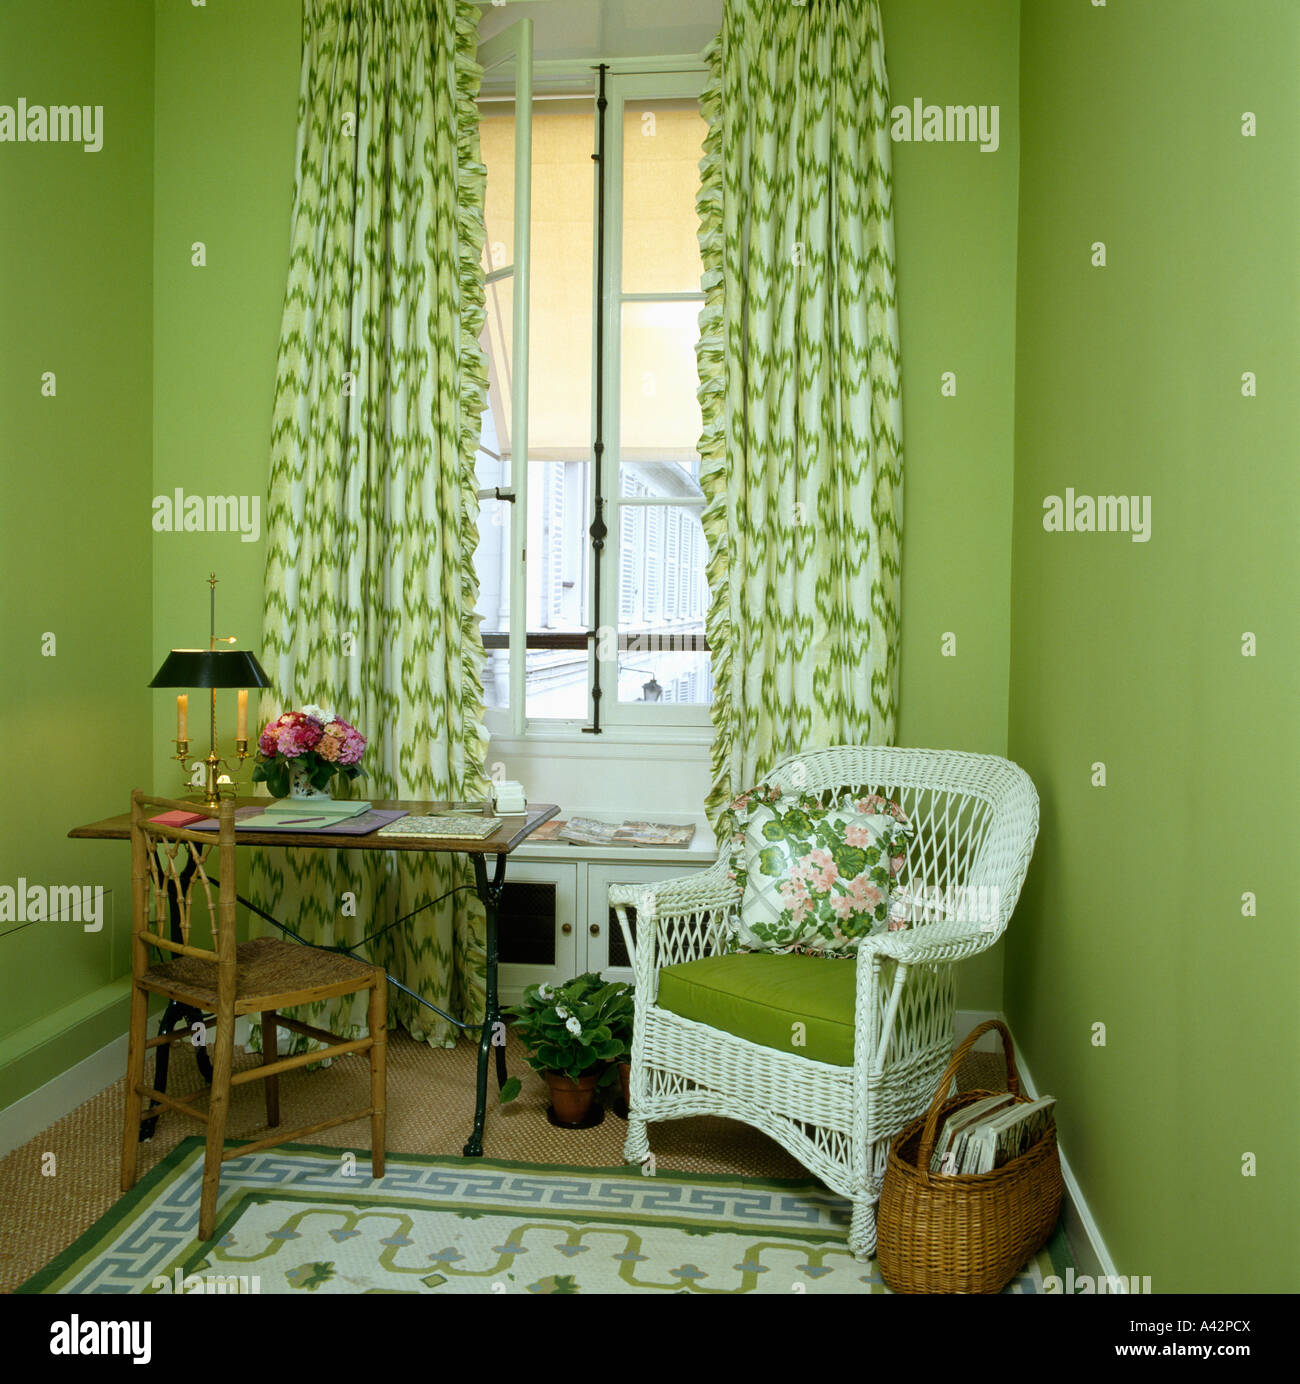 https://c8.alamy.com/compes/a42pcx/pequena-sala-verde-con-verde-y-blanco-y-cortinas-estampadas-y-silla-de-mimbre-blanco-con-cojin-verde-a42pcx.jpg